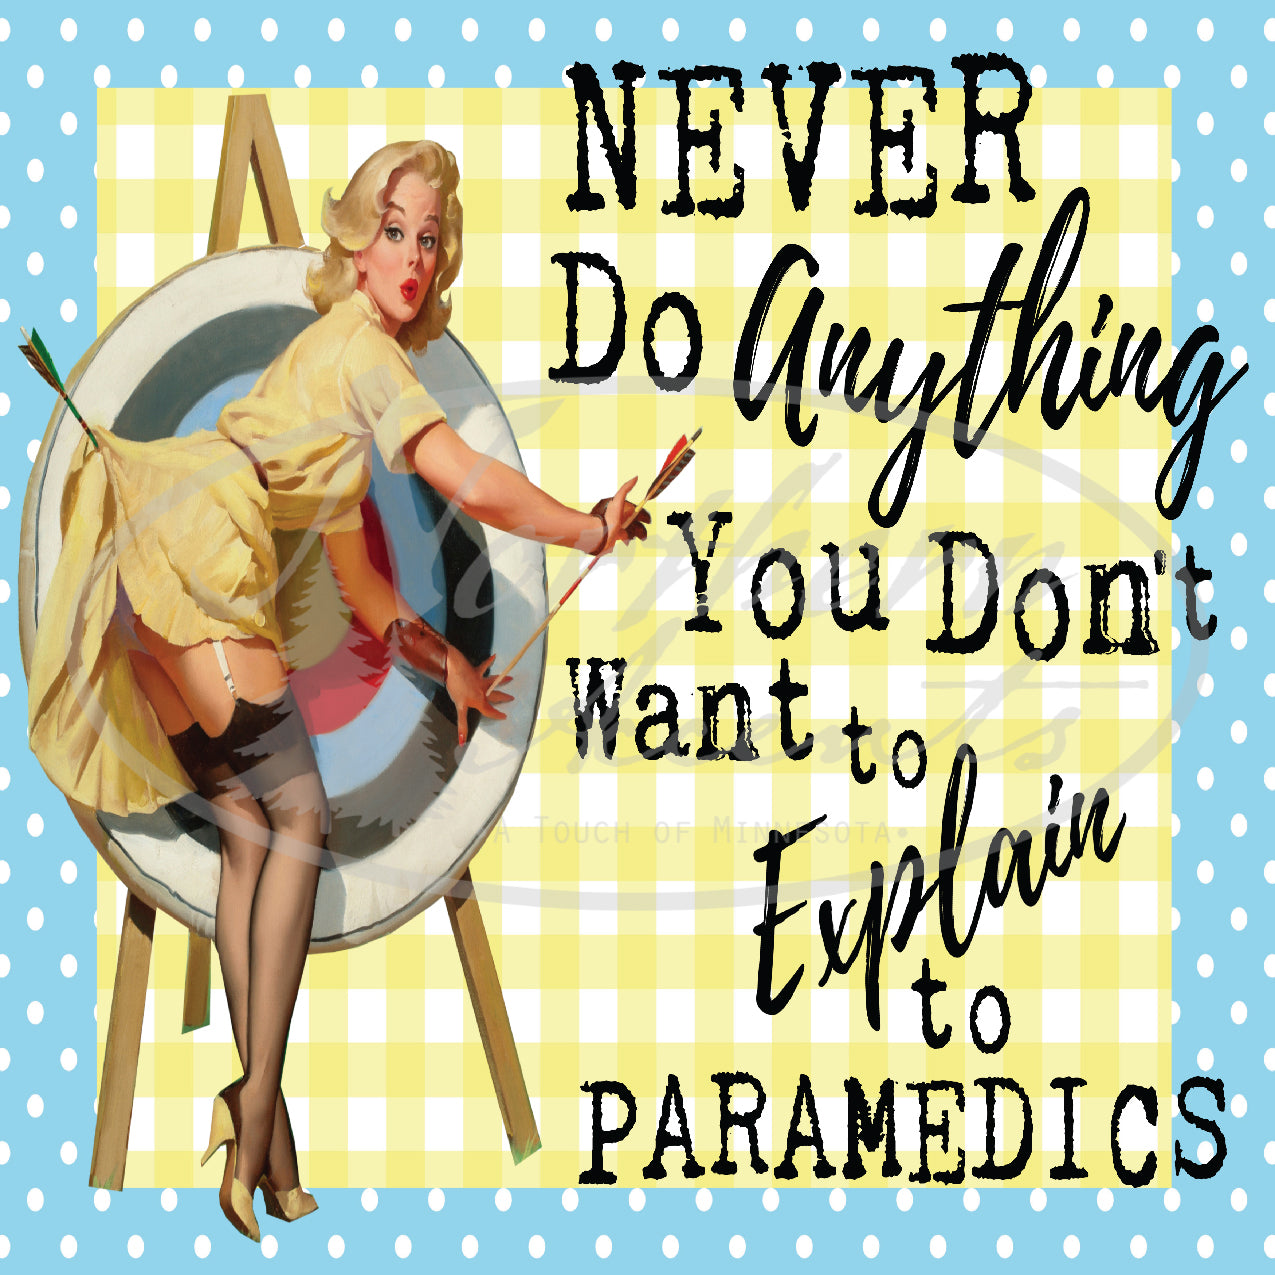 Don't Want to Explain to Paramedics Coaster